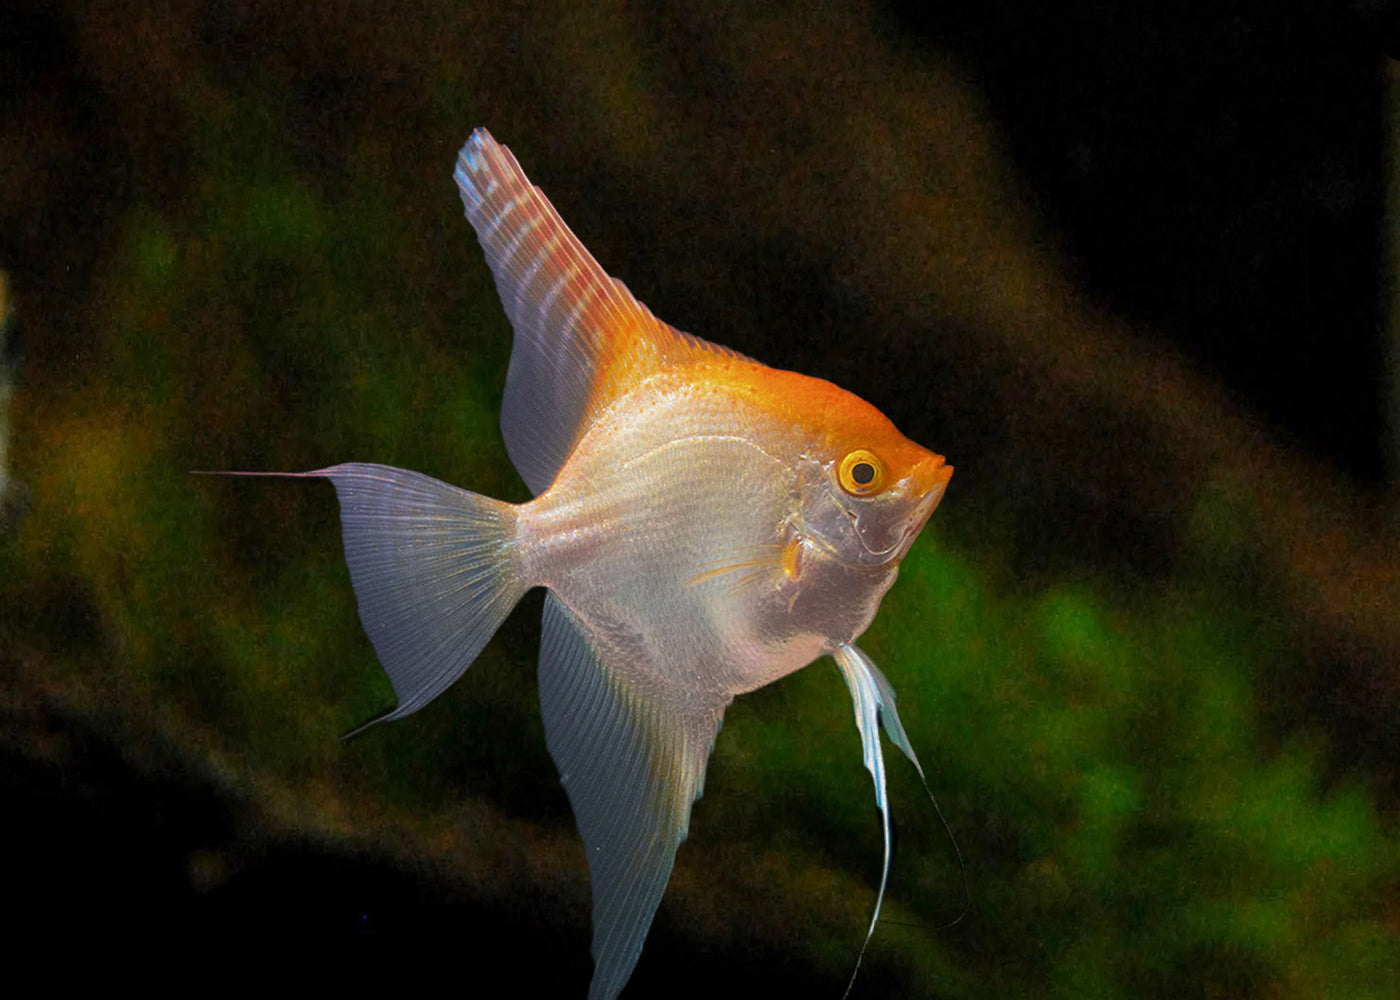 Albino Redshouler Angelfish | Angel Fish for Sale | Live fish online | coburgauqarium.com.au｜Aquarium FIsh for sale | Tropicah fish store | Freshwater Fish | Coburg Aquarium